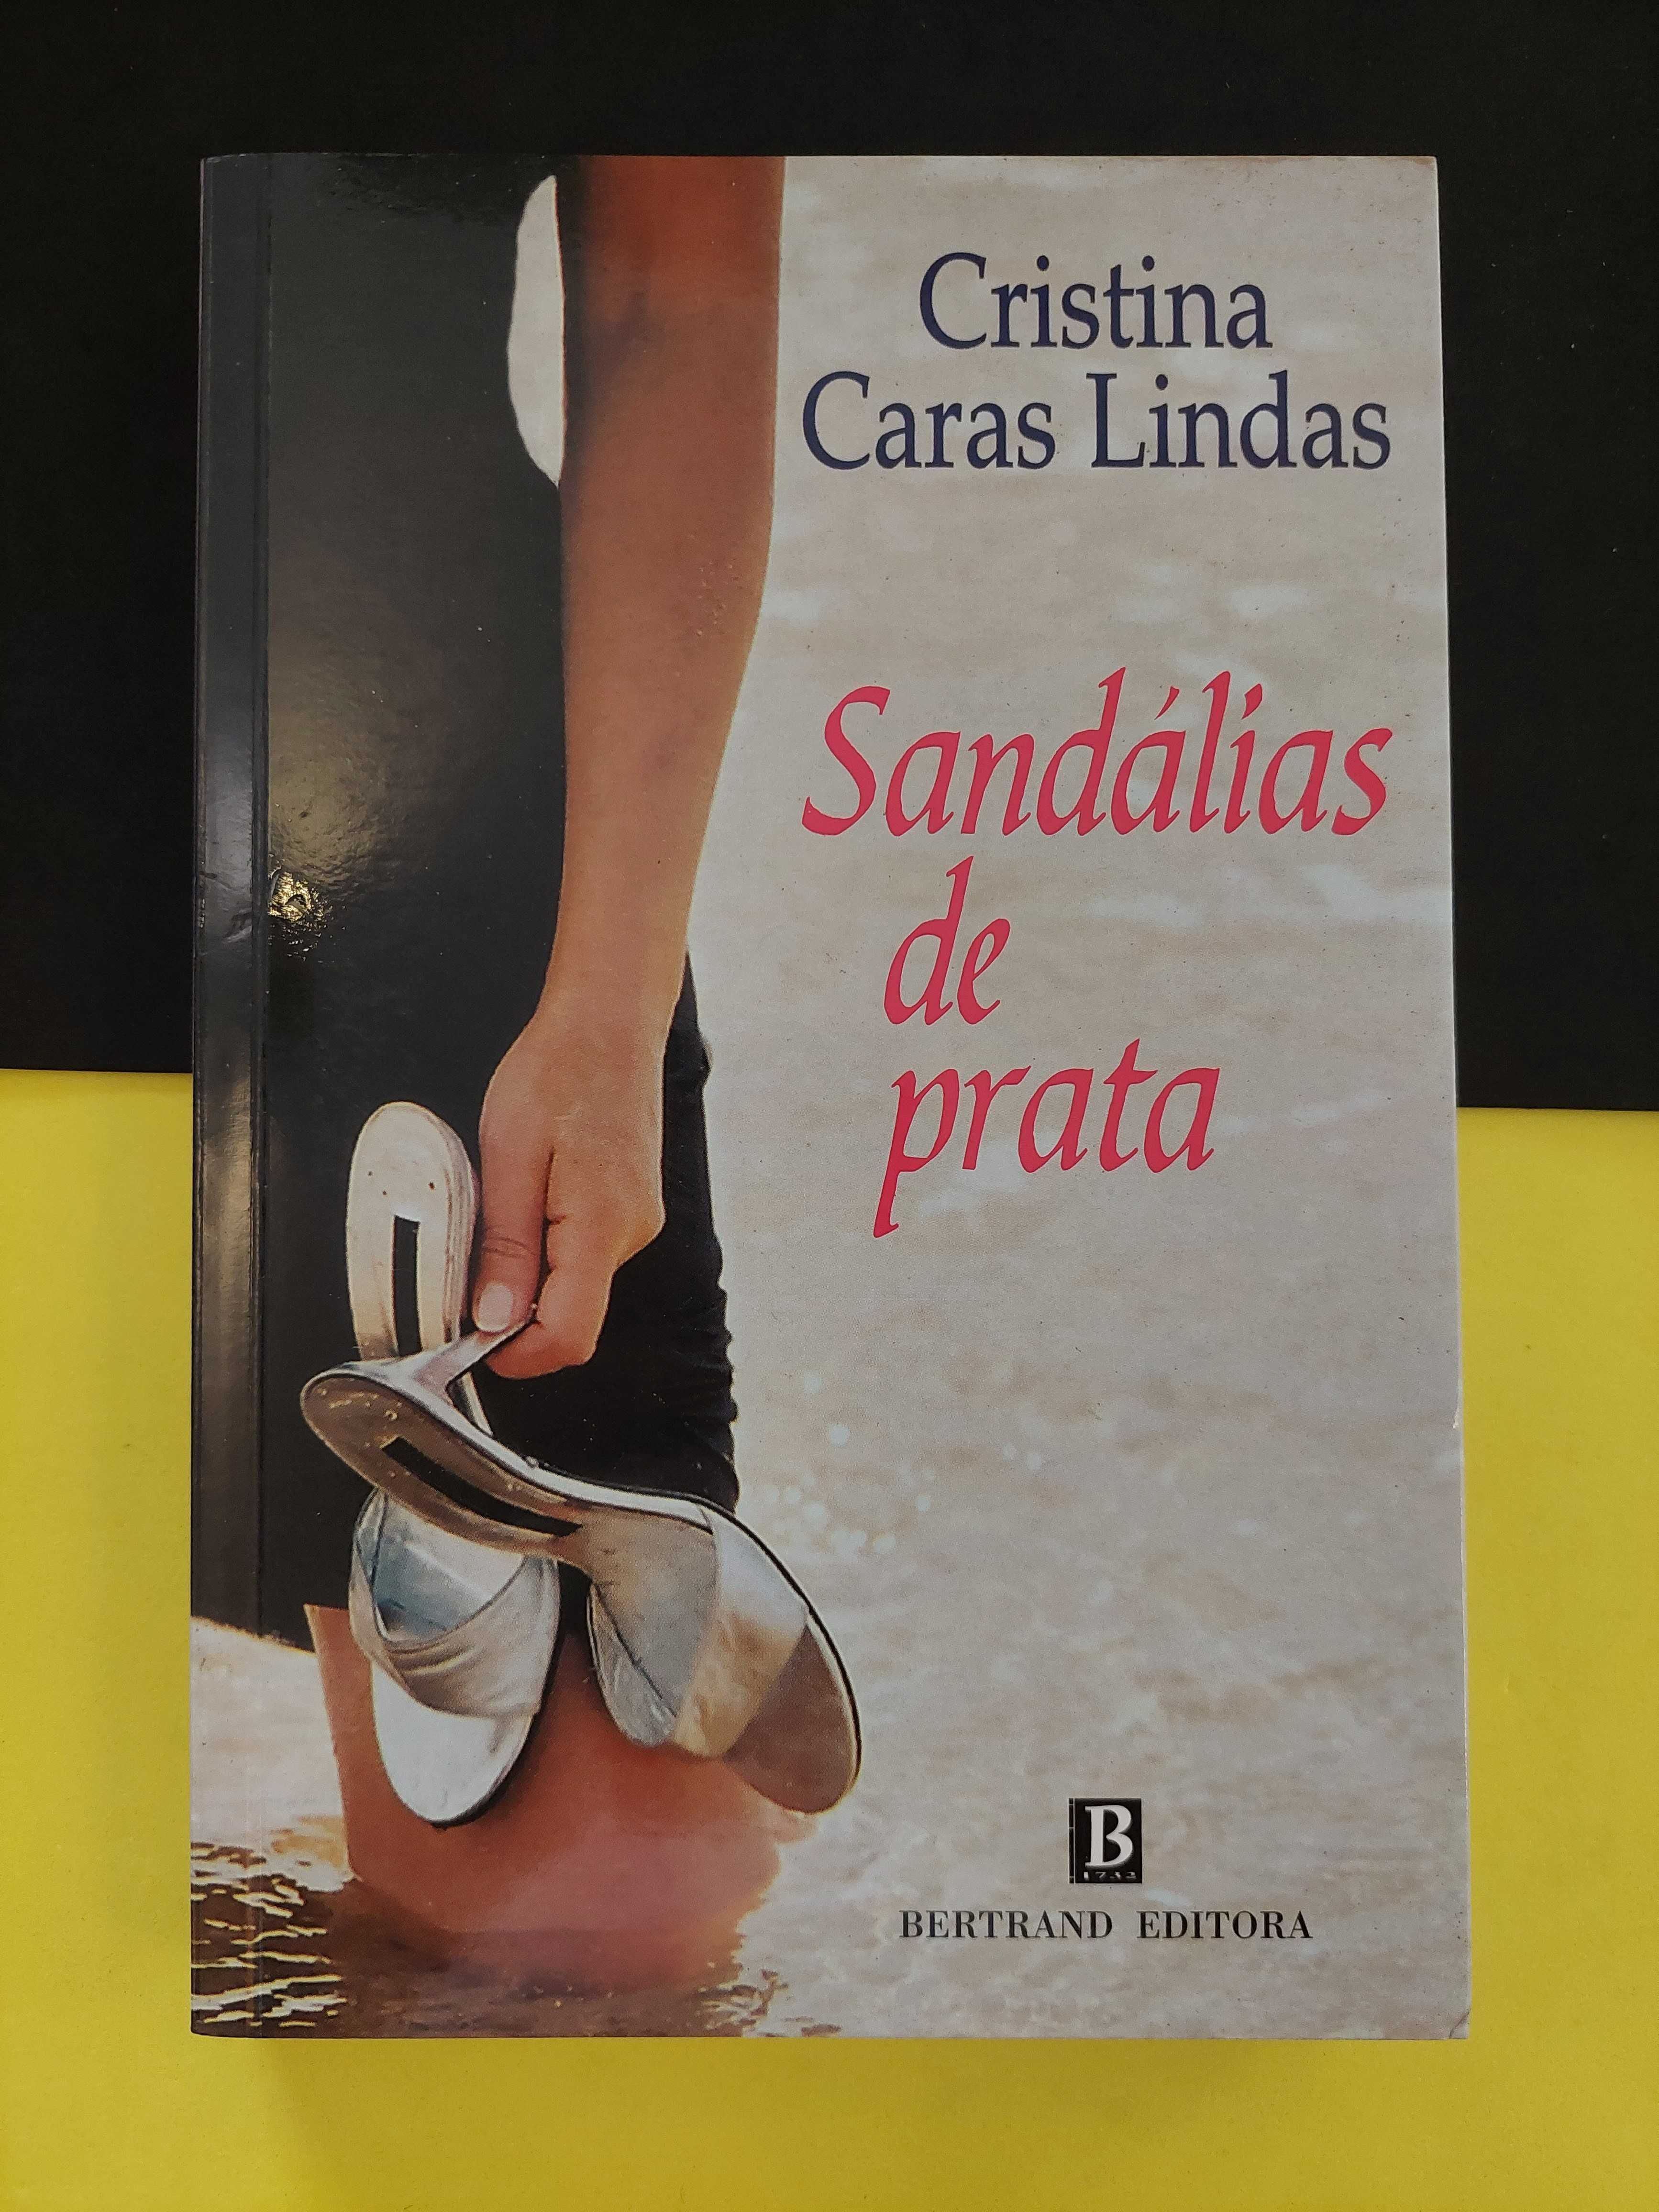 Cristina Caras Lindas - Sandálias de Prata